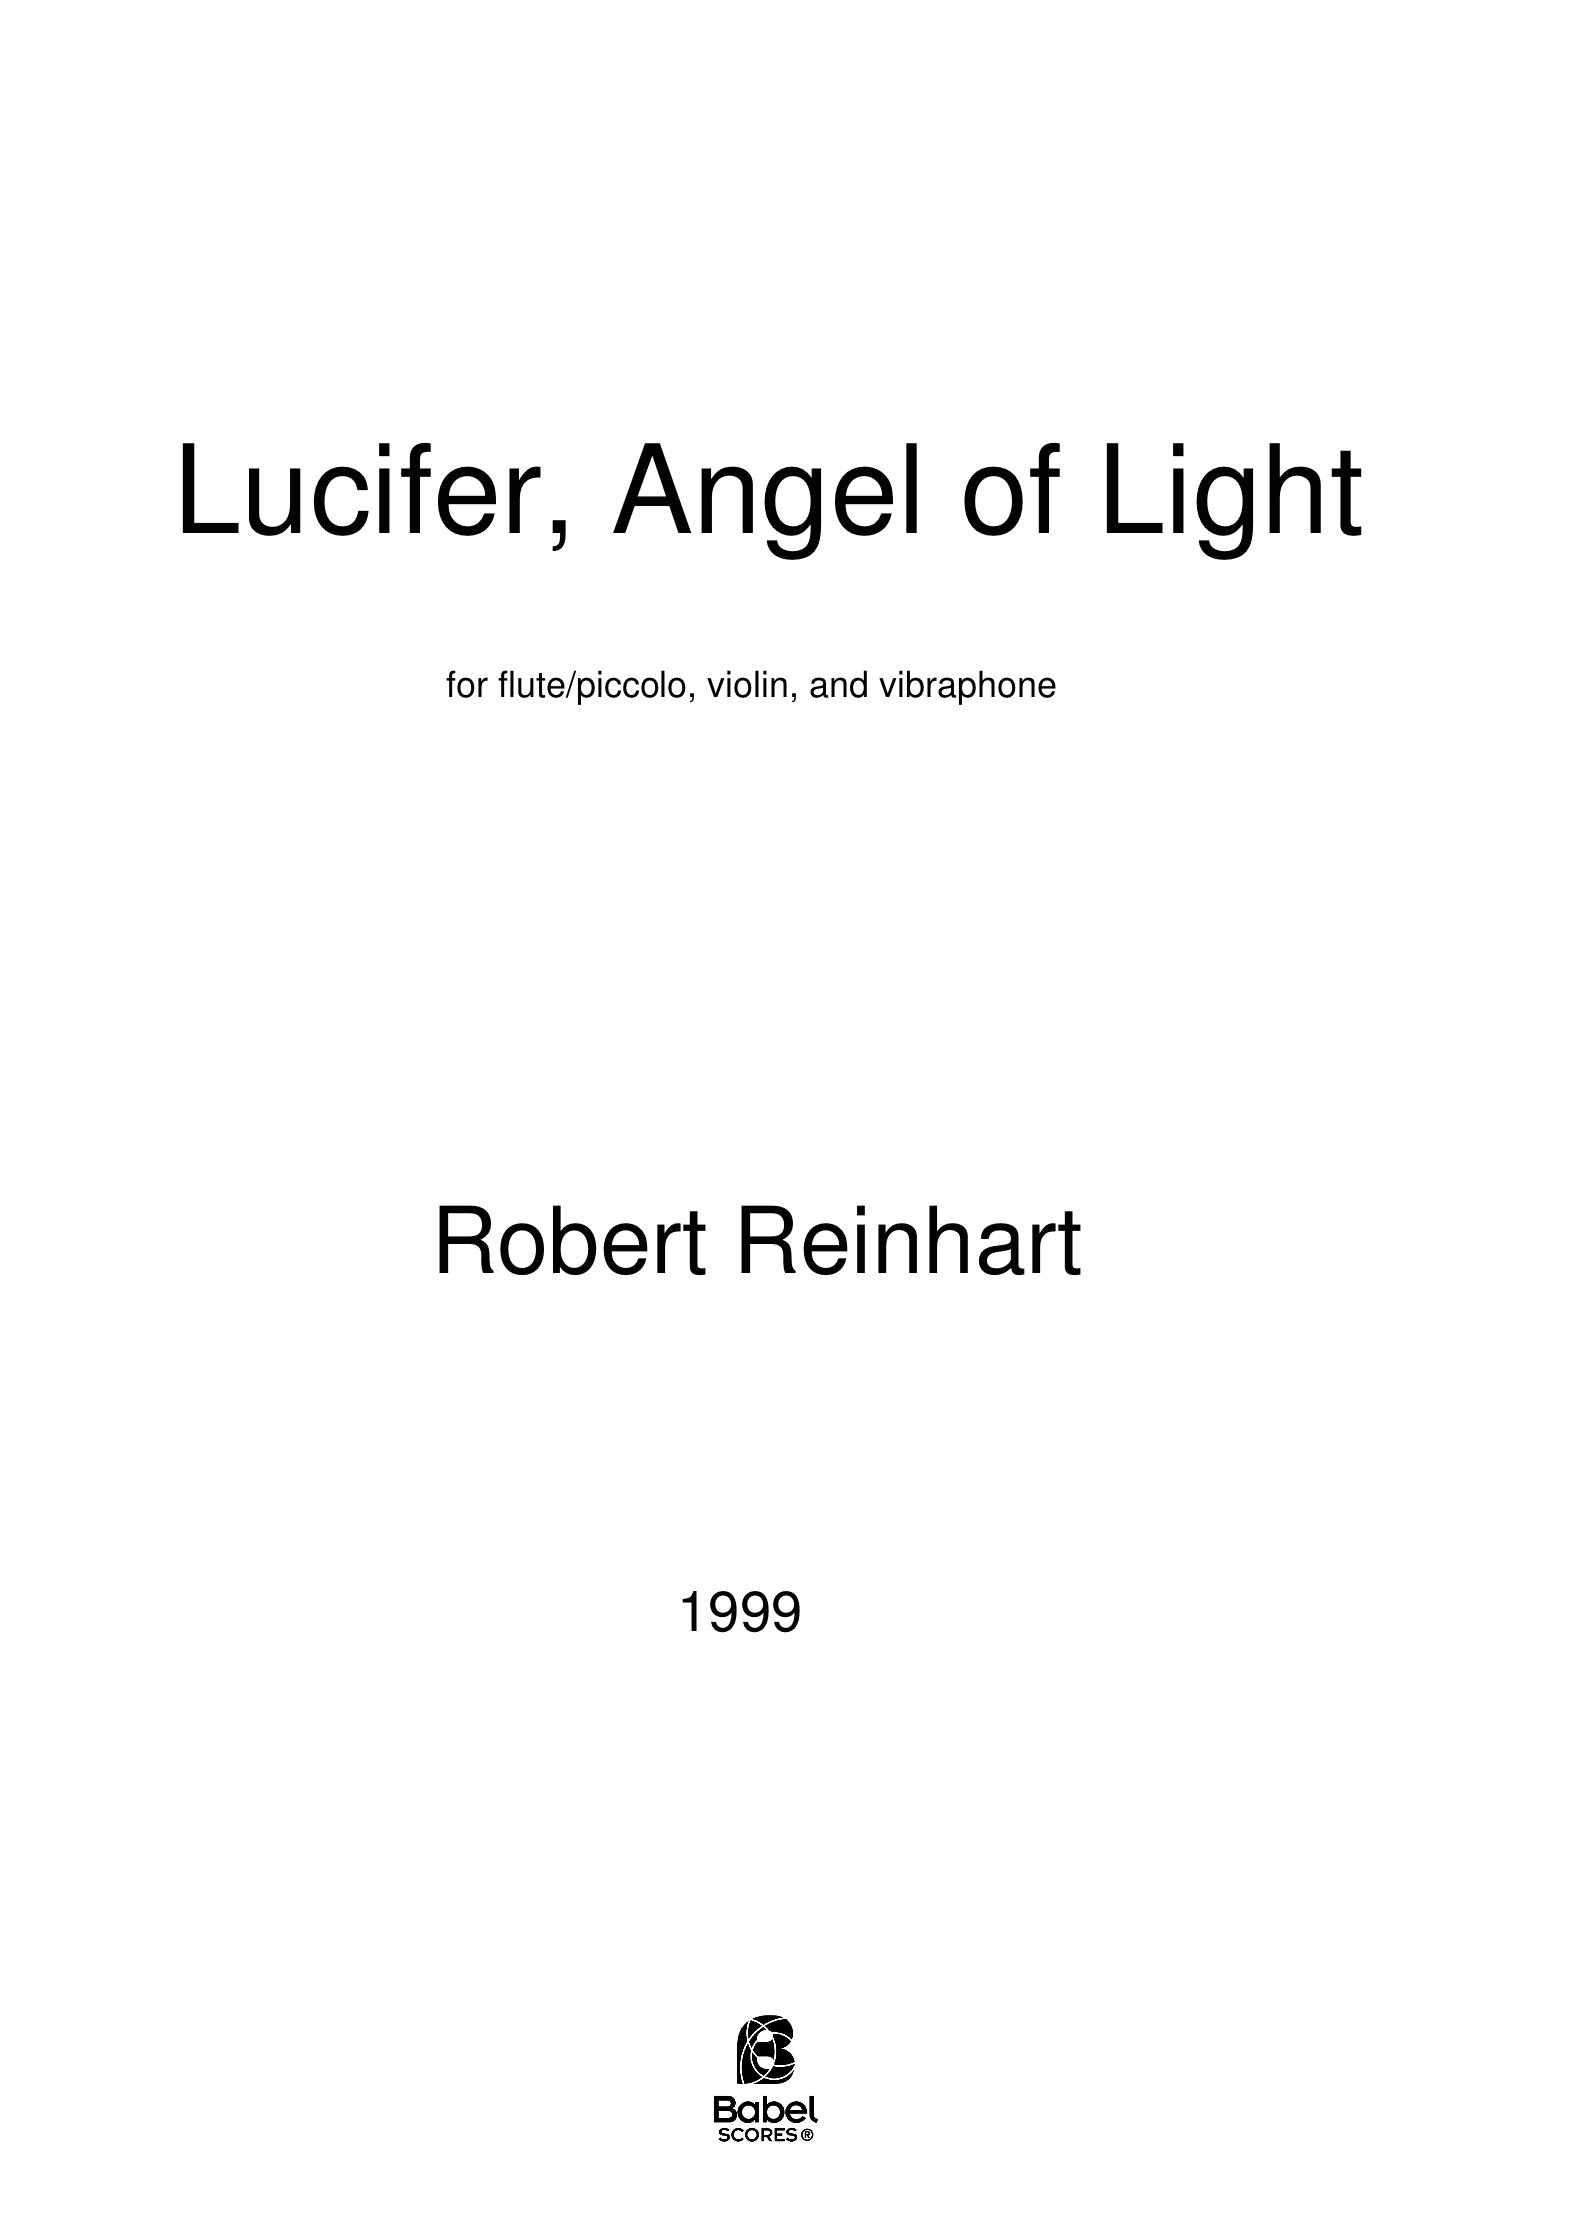 LuciferAngelofLight A4 z